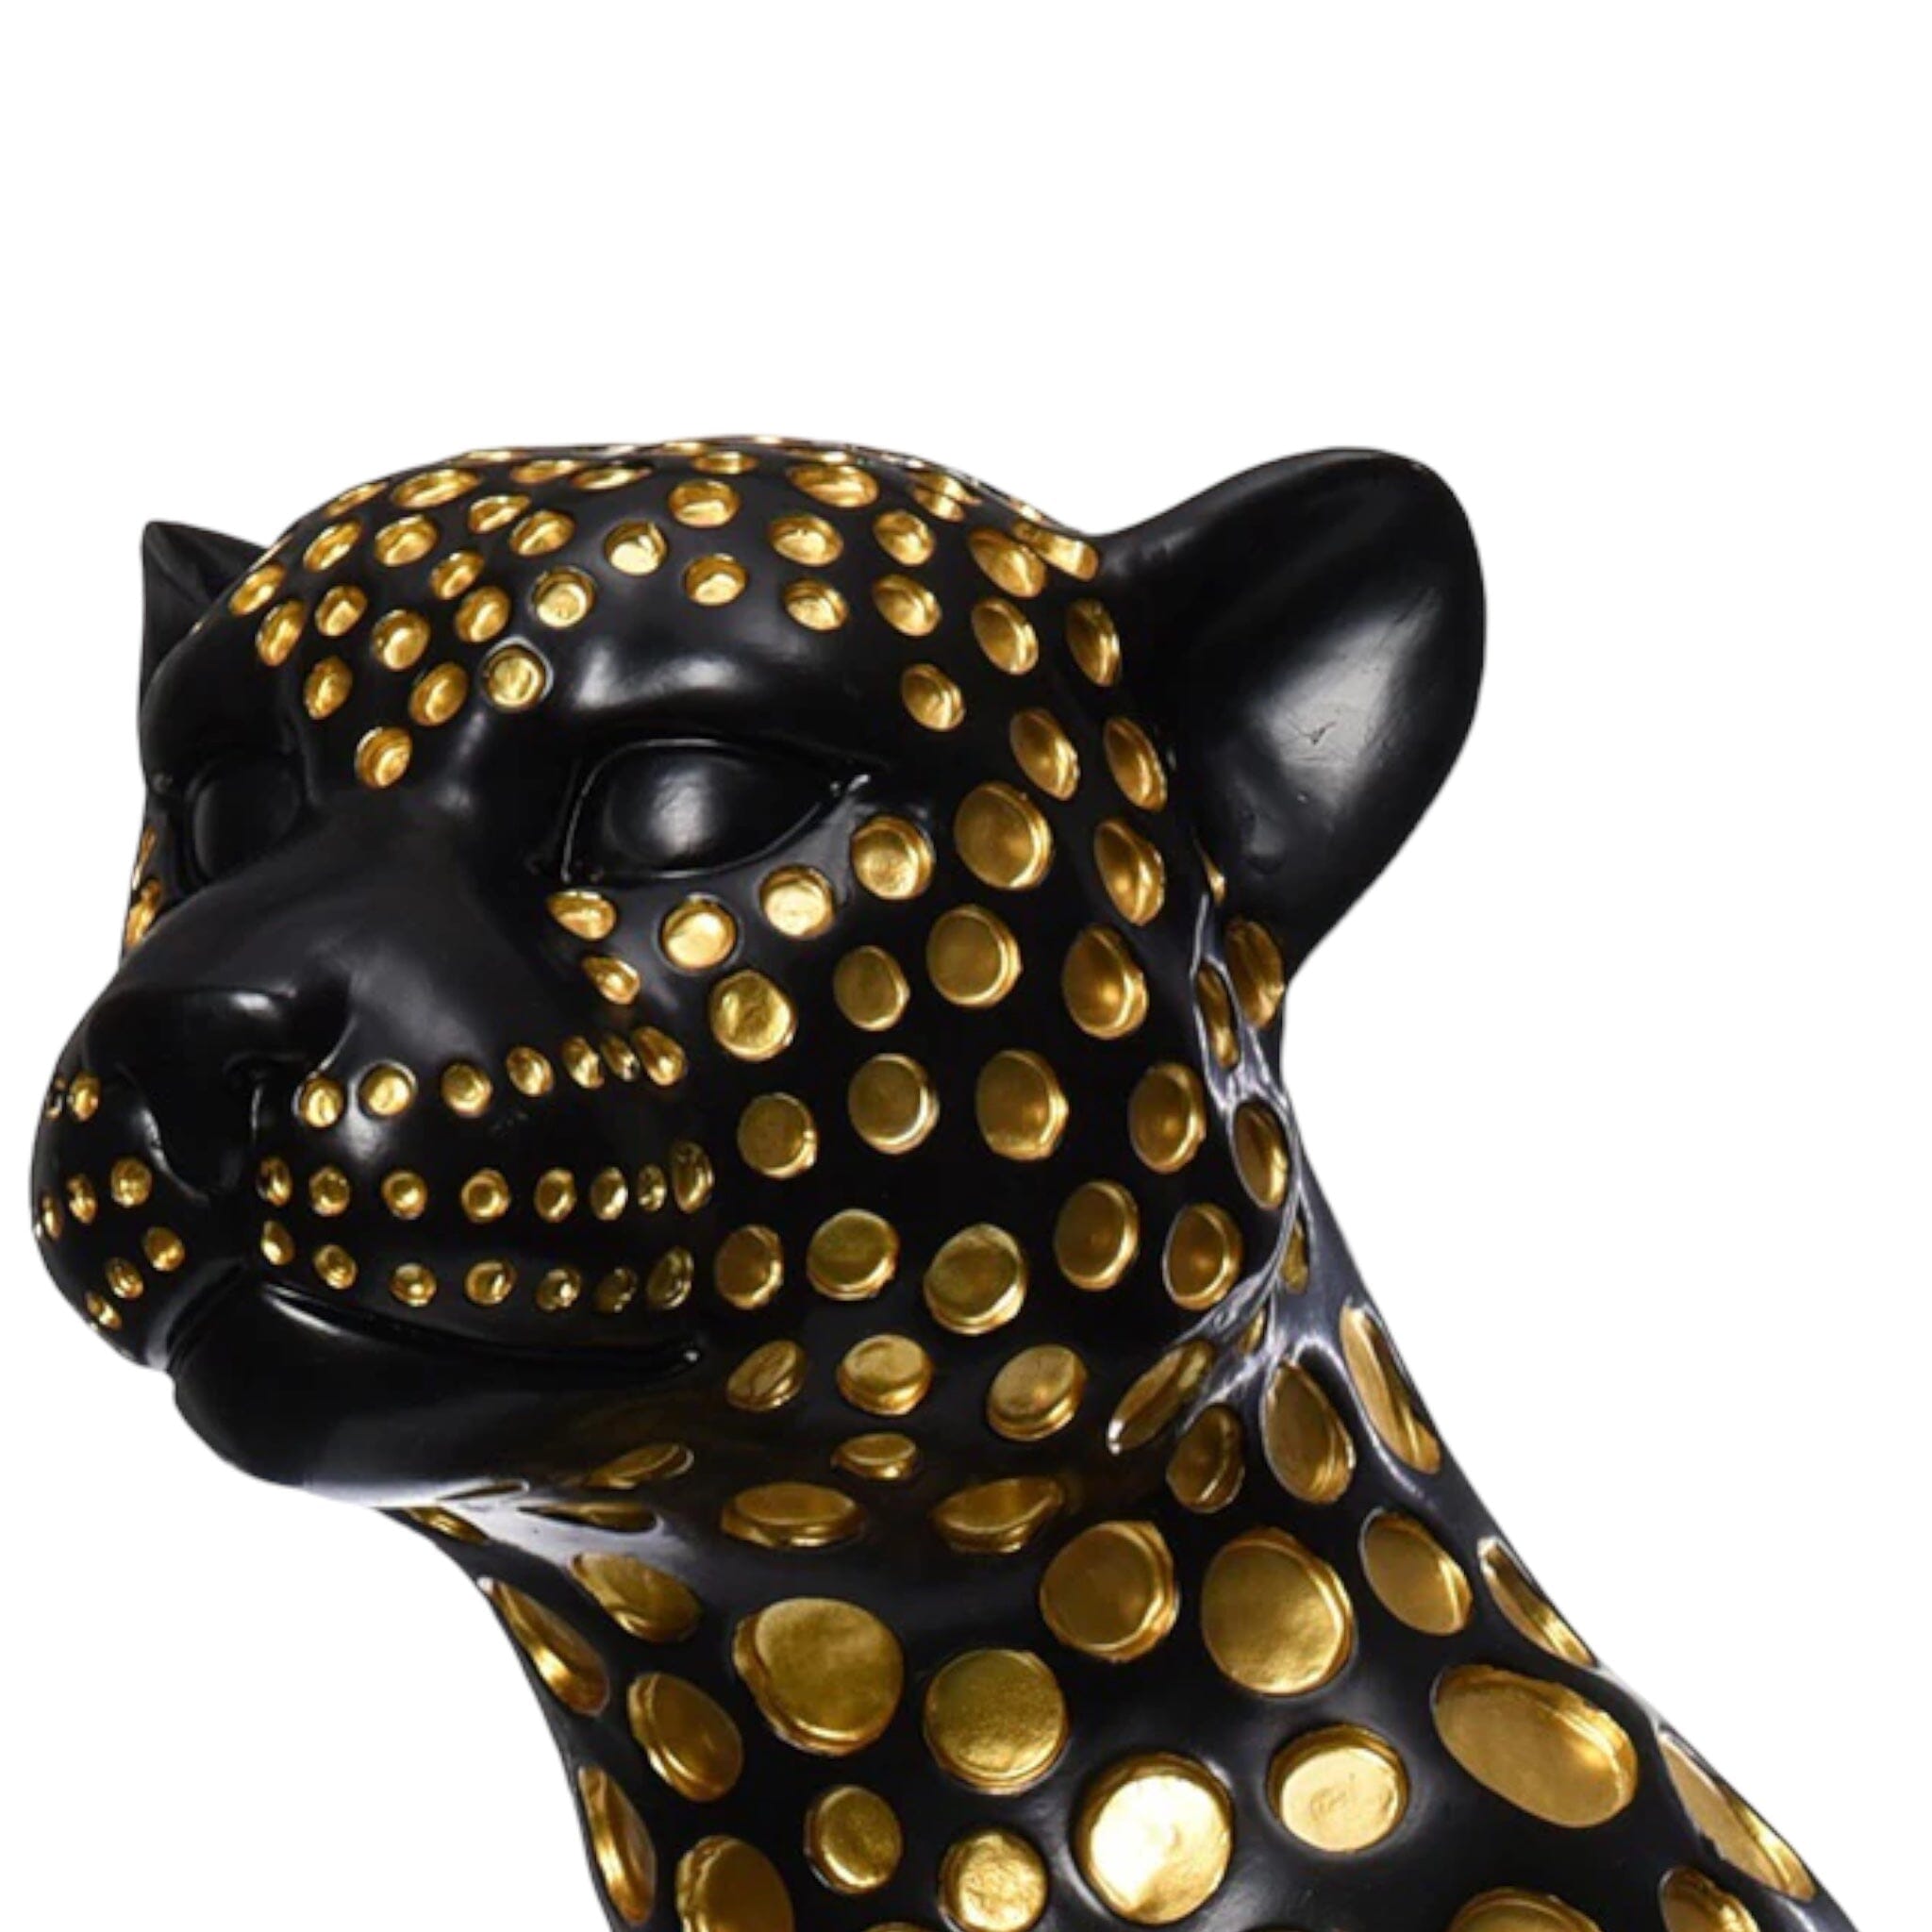 Leopard Statue Decor 